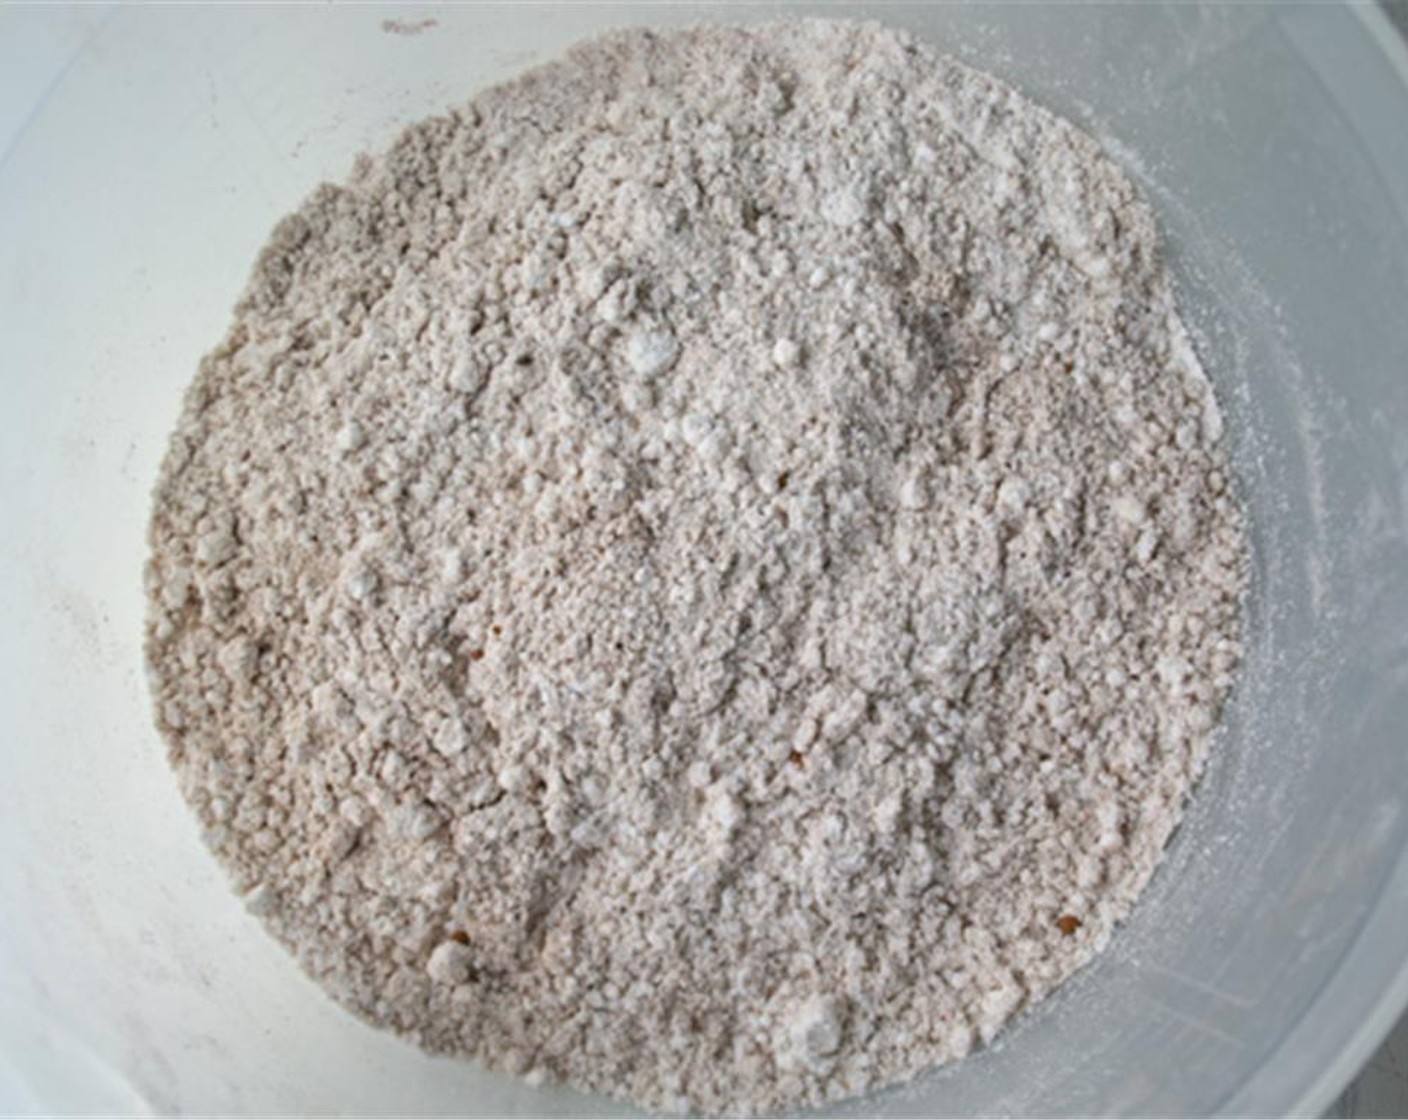 Schritt 2 Mehl (195 g), Backpulver (1 TL), Natron (1 TL), Salz (nach Bedarf), Zimt (1 TL), Kürbiskuchen-Gewürz (1 TL) und Piment (nach Bedarf) in eine Schüssel geben. Alles gut mischen.